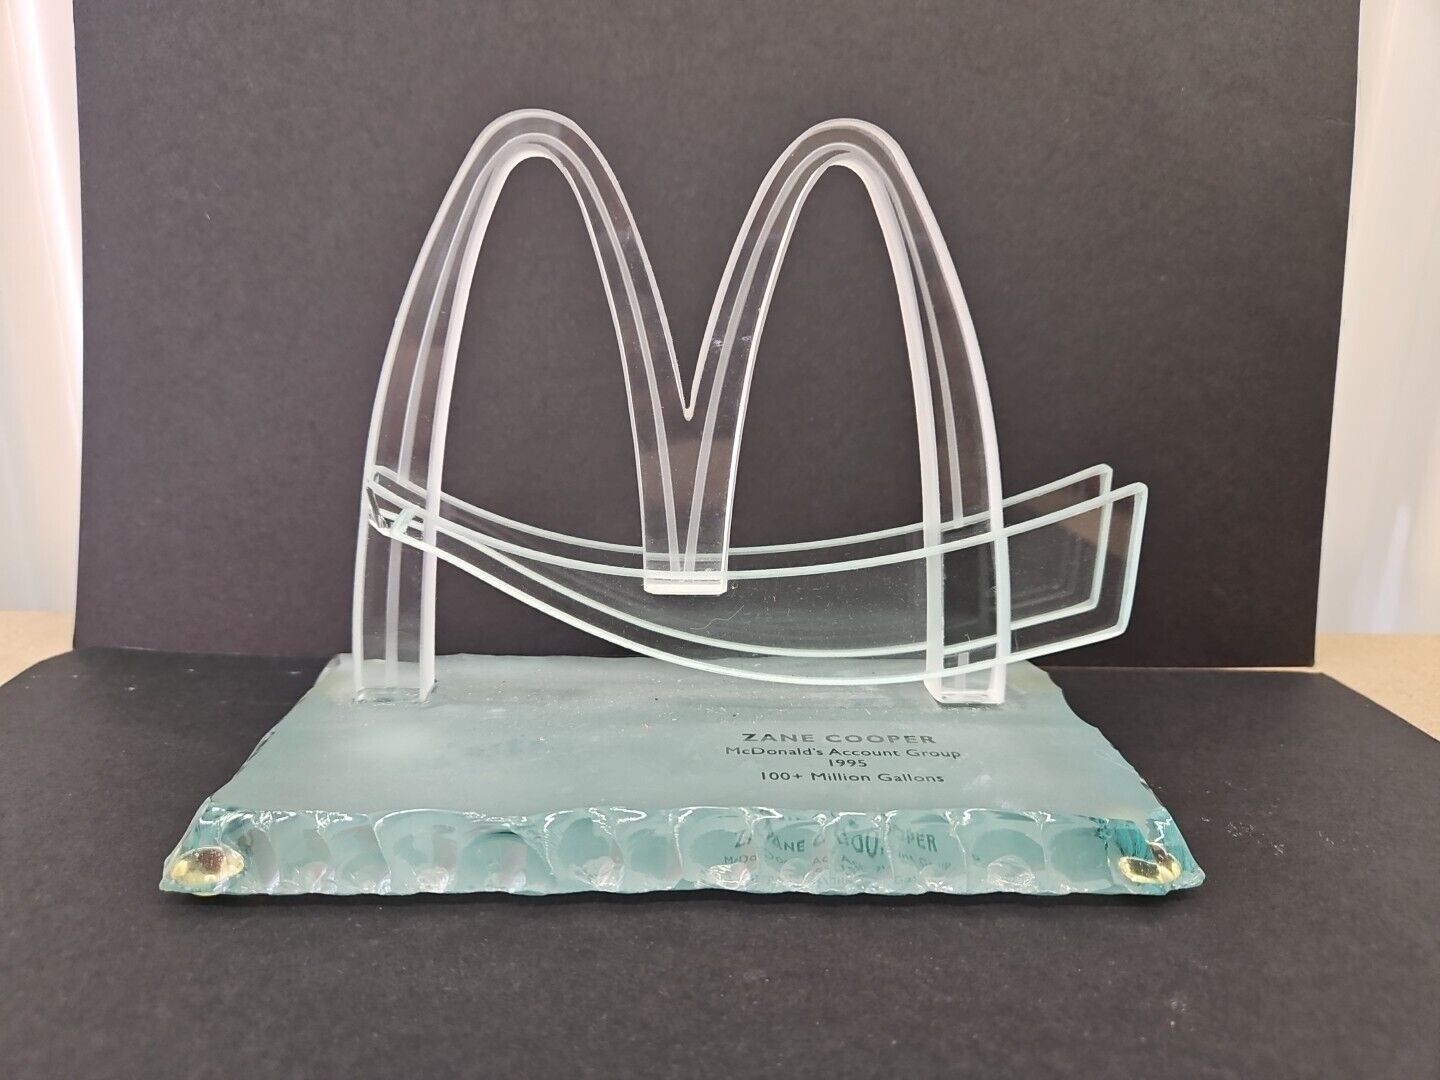 Vtg Acrylic McDonald’s Sculpture Golden Arches 100+ Million Gallons Award 1995